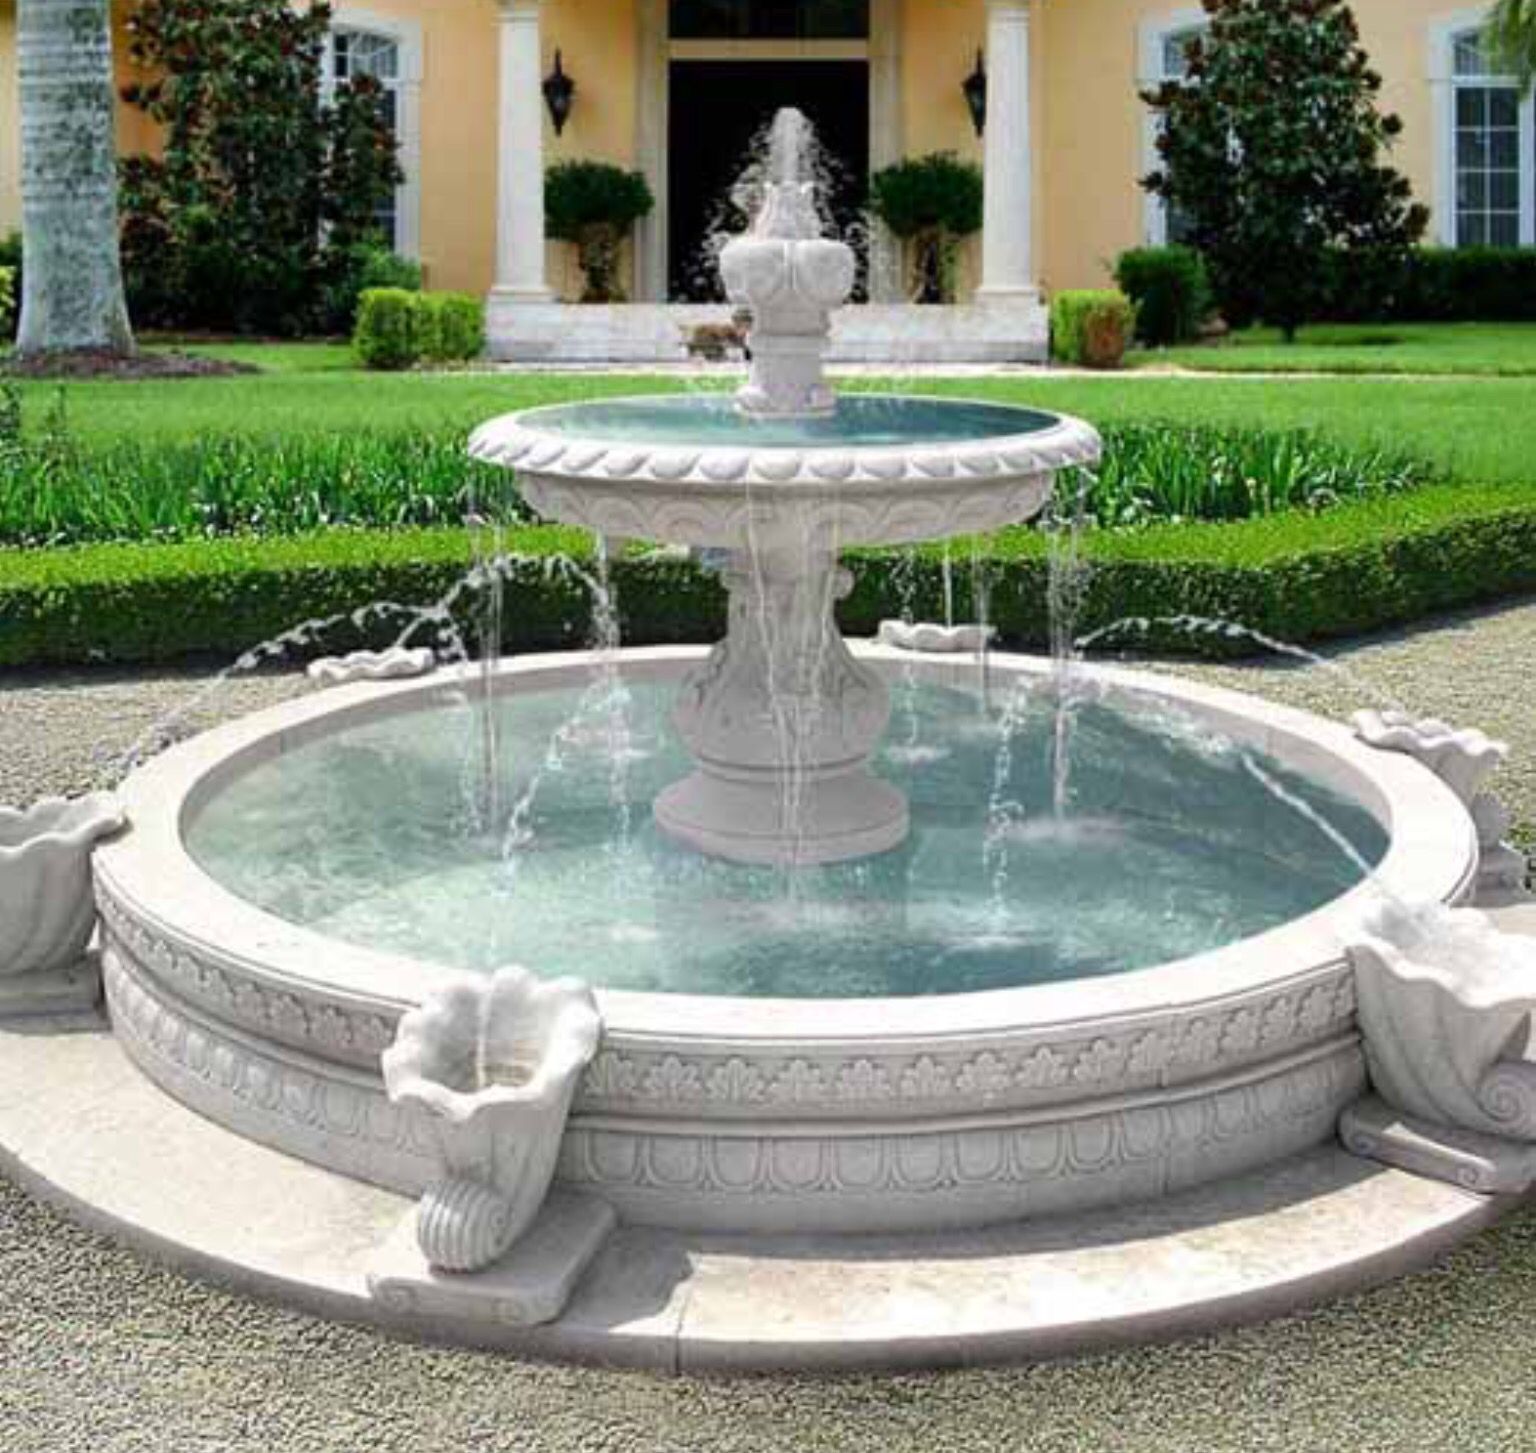 Free photo: Ancient circular fountain - Fountain, Garden ...